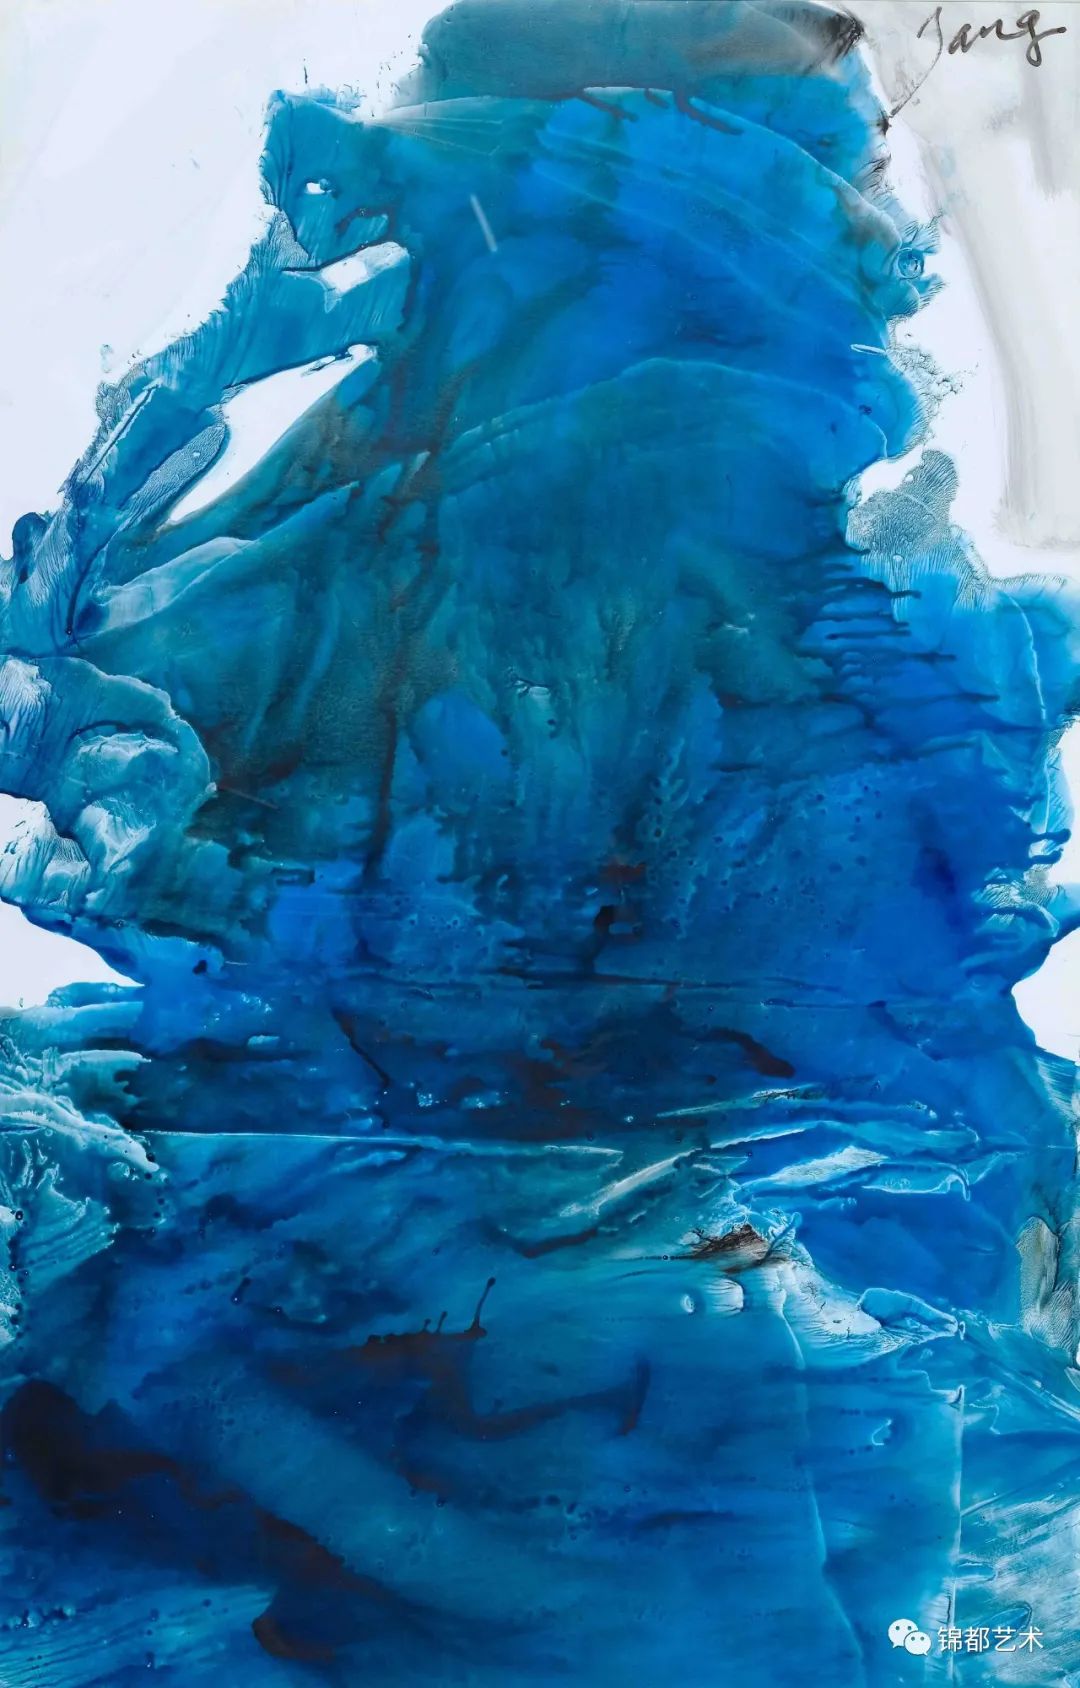 《烟雨霜凝——T抽象绘画学术展》在北京锦都艺术中心开幕